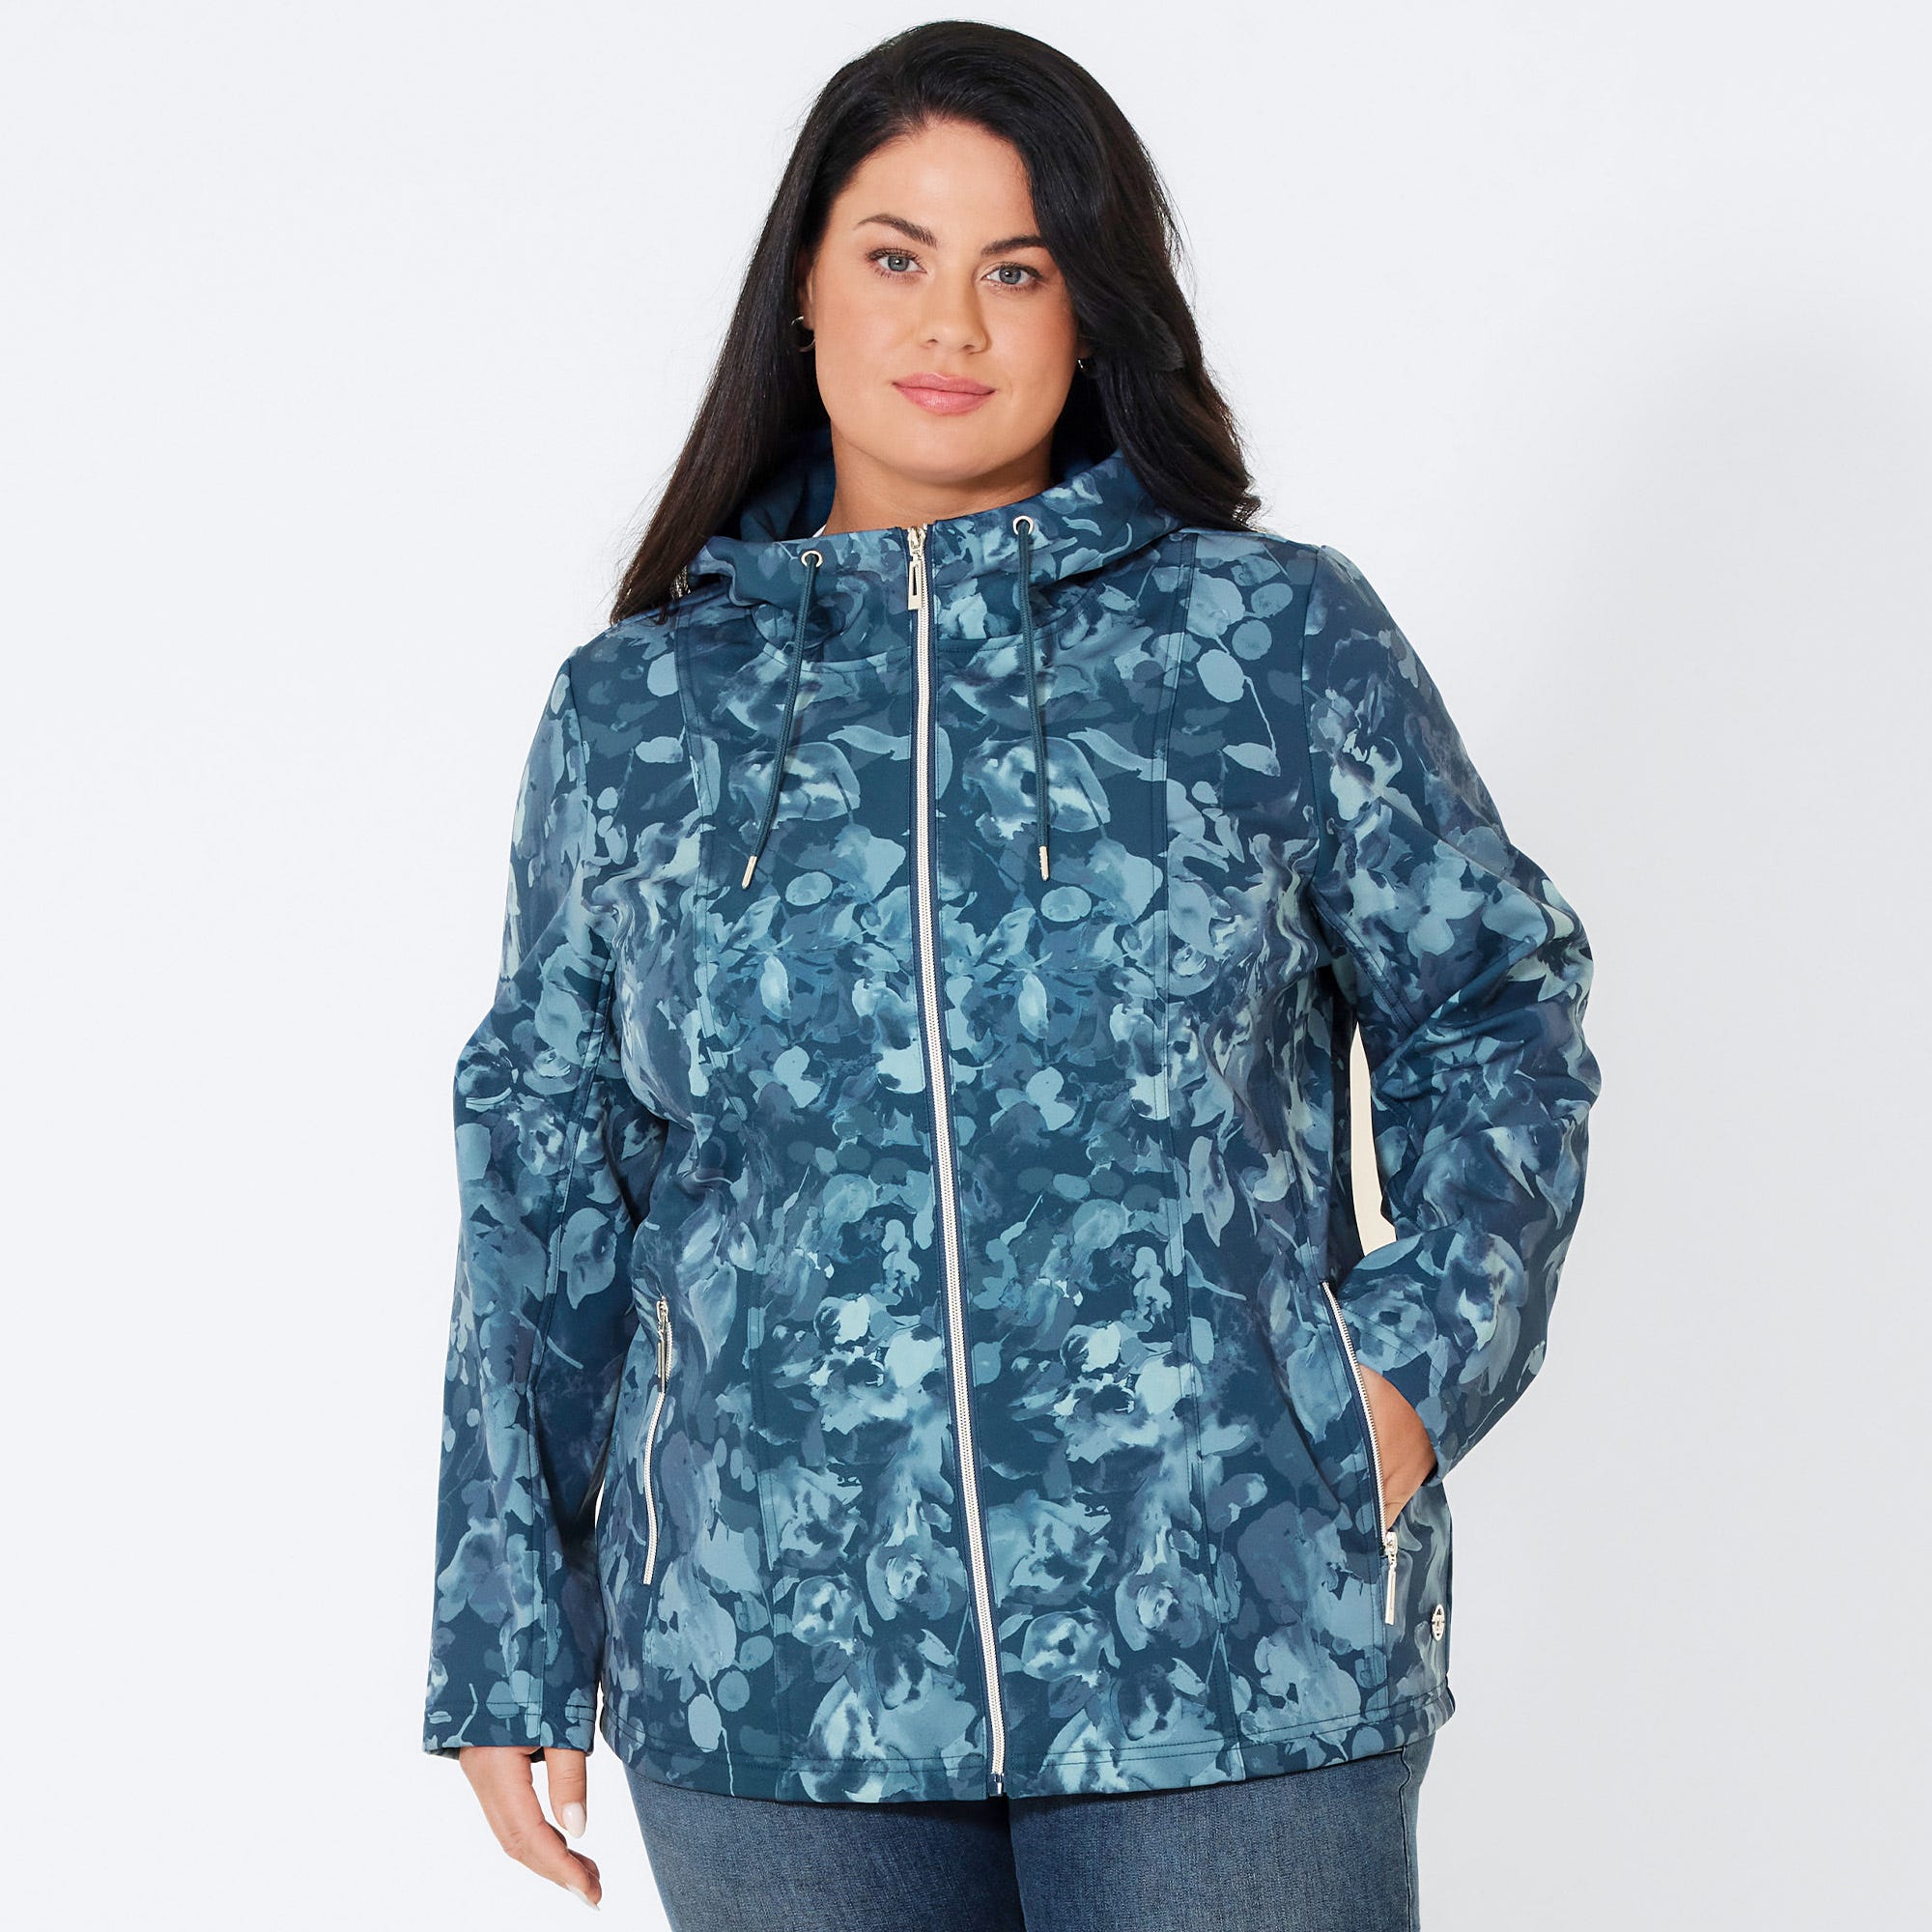 Damen-Softshell-Jacke mit Trend-Muster, große Größen